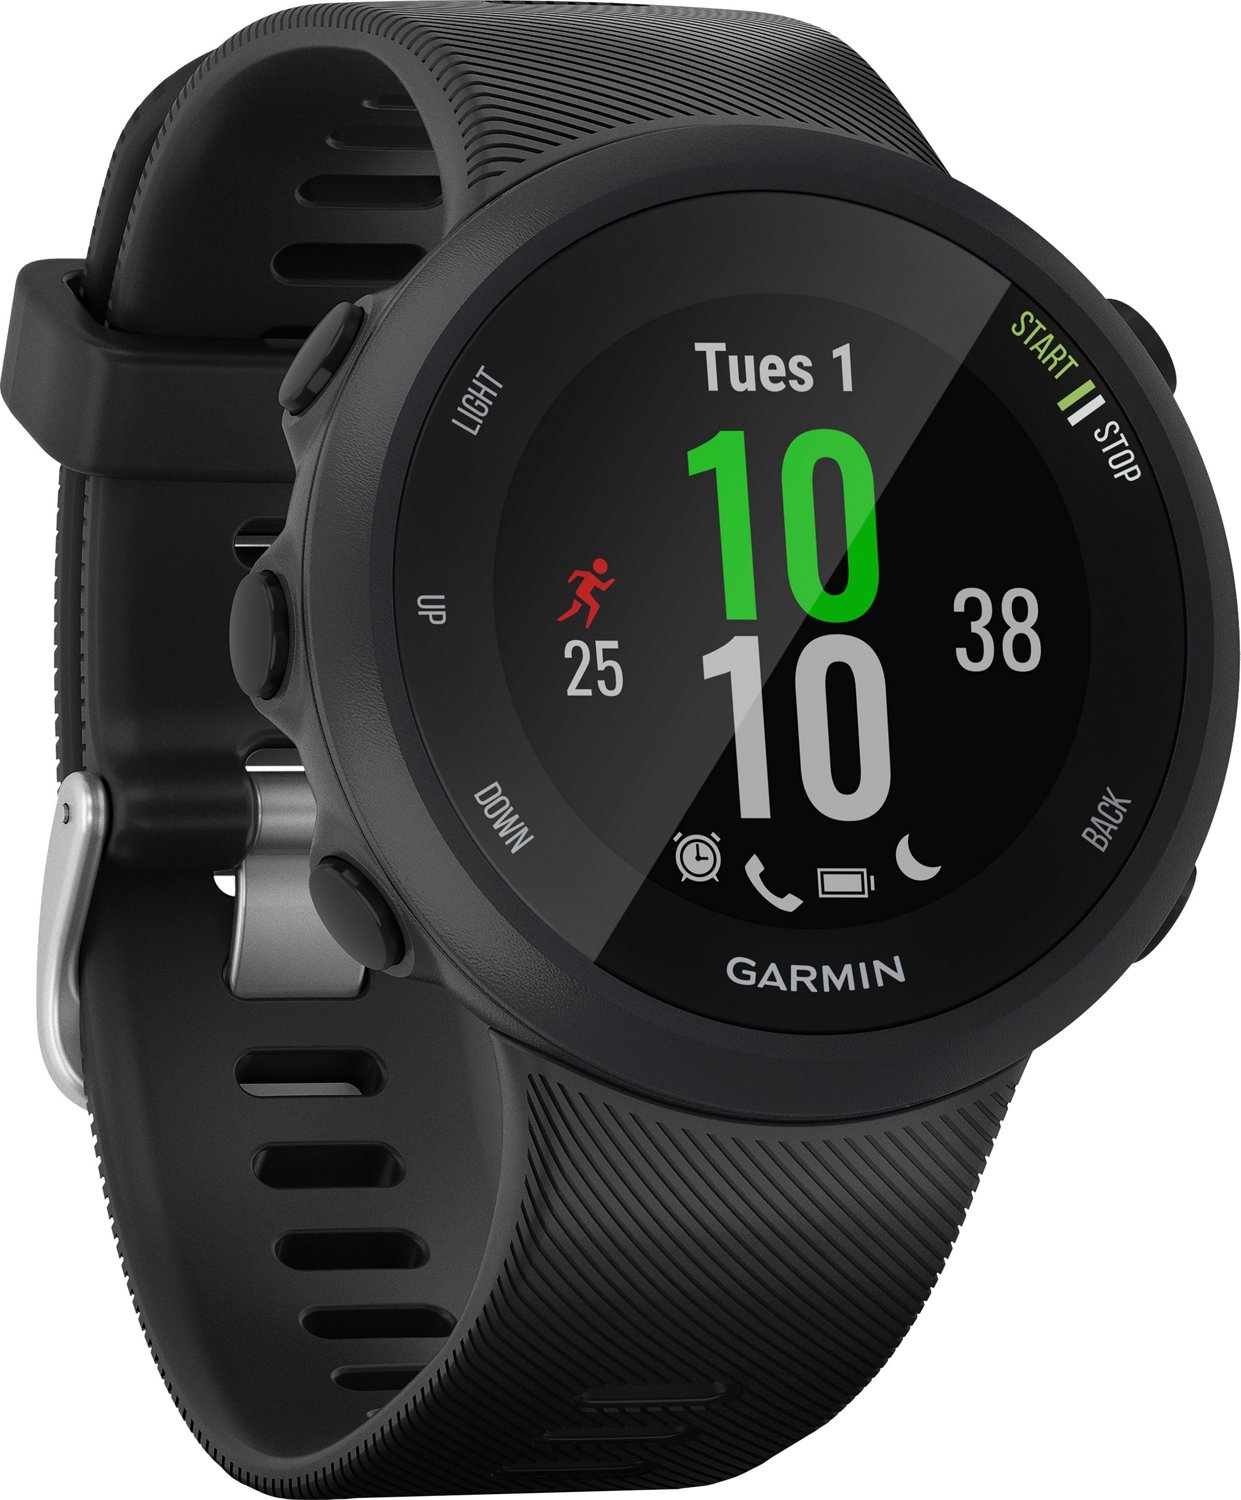 Garmin Forerunner 45 Review: A GPS Watch Made for Runners